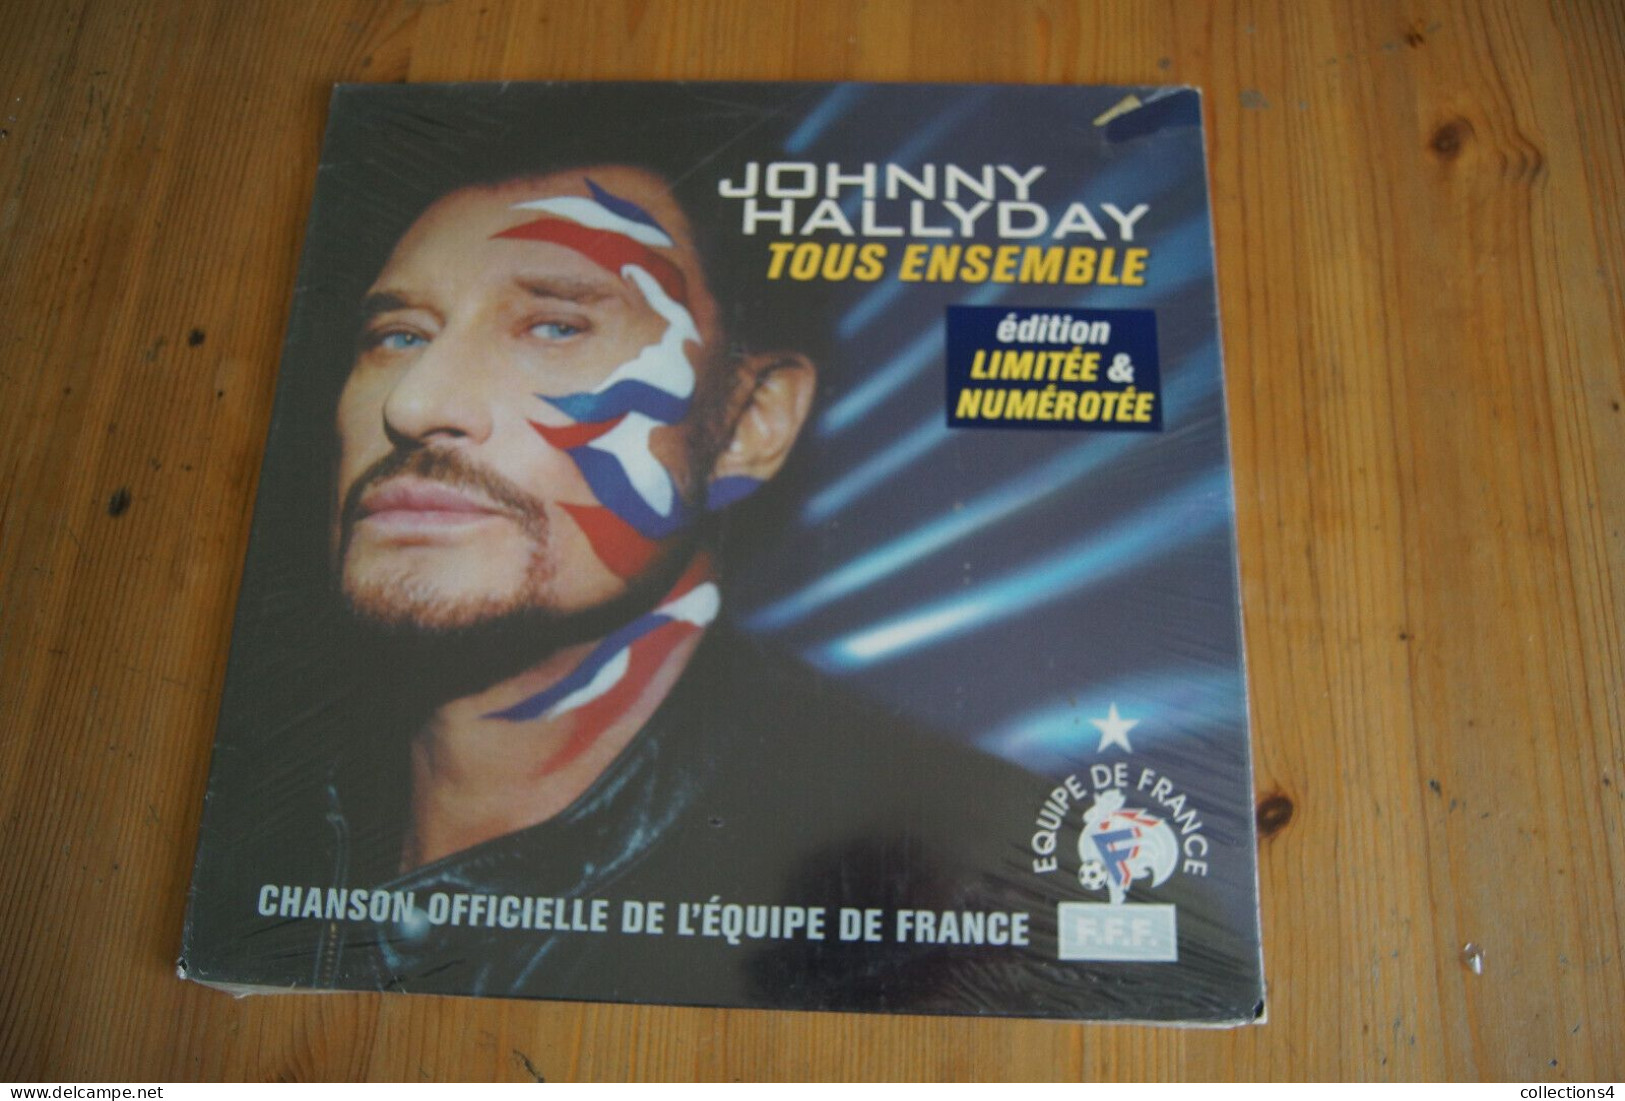 JOHNNY HALLYDAY TOUS ENSEMBLE MAXI 45T NUMEROTEE NEUF SCELLE 2002 - 45 Rpm - Maxi-Singles